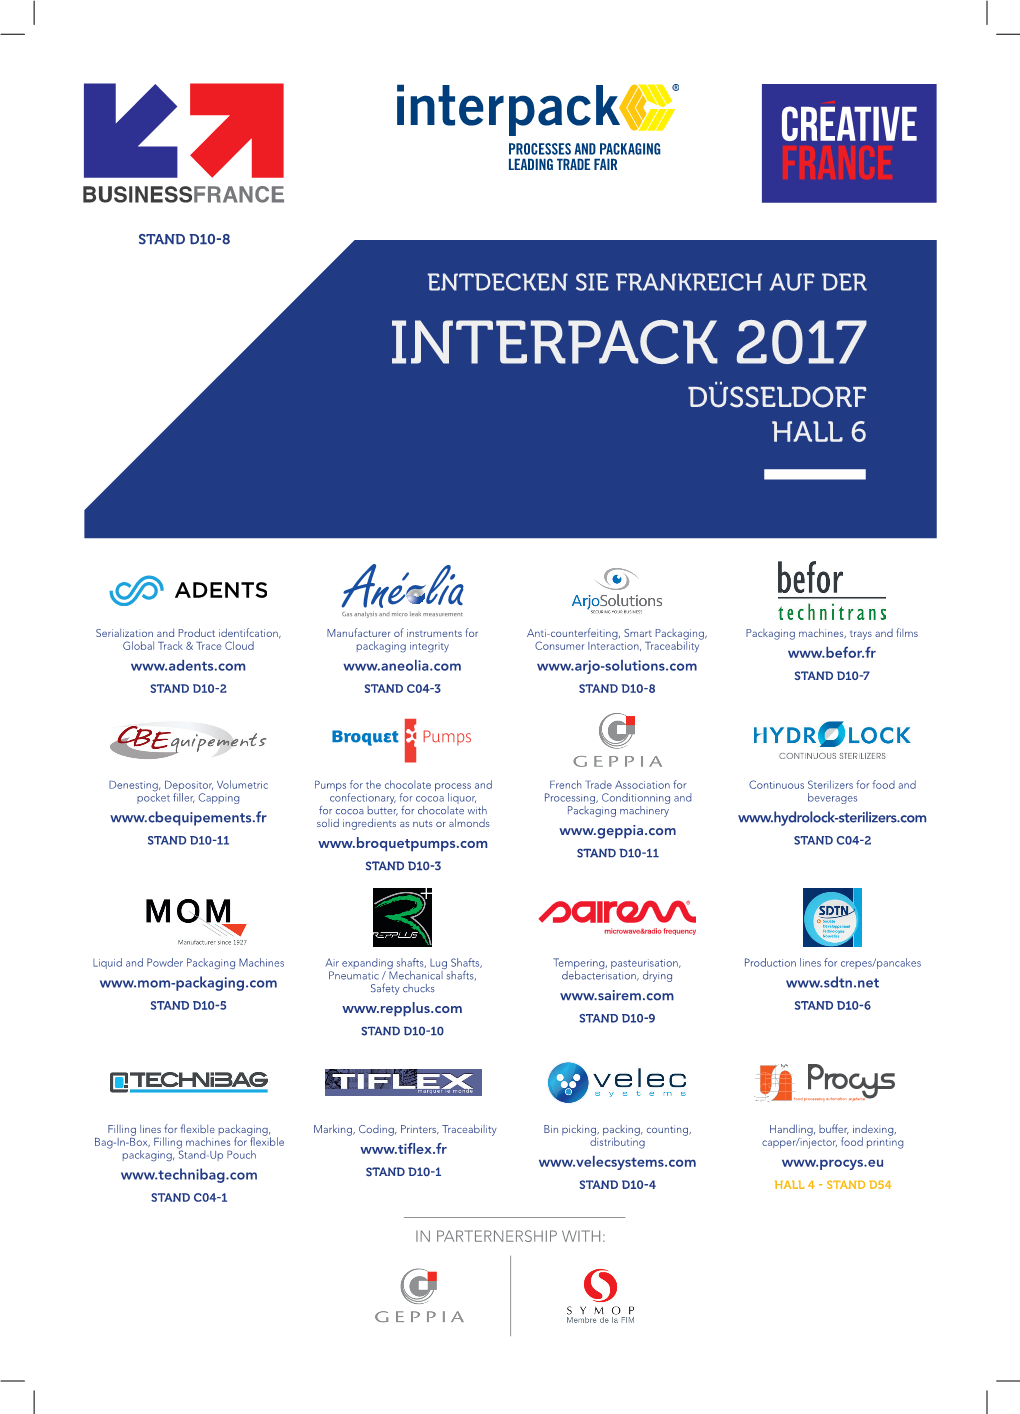 Interpack 2017 Düsseldorf Hall 6